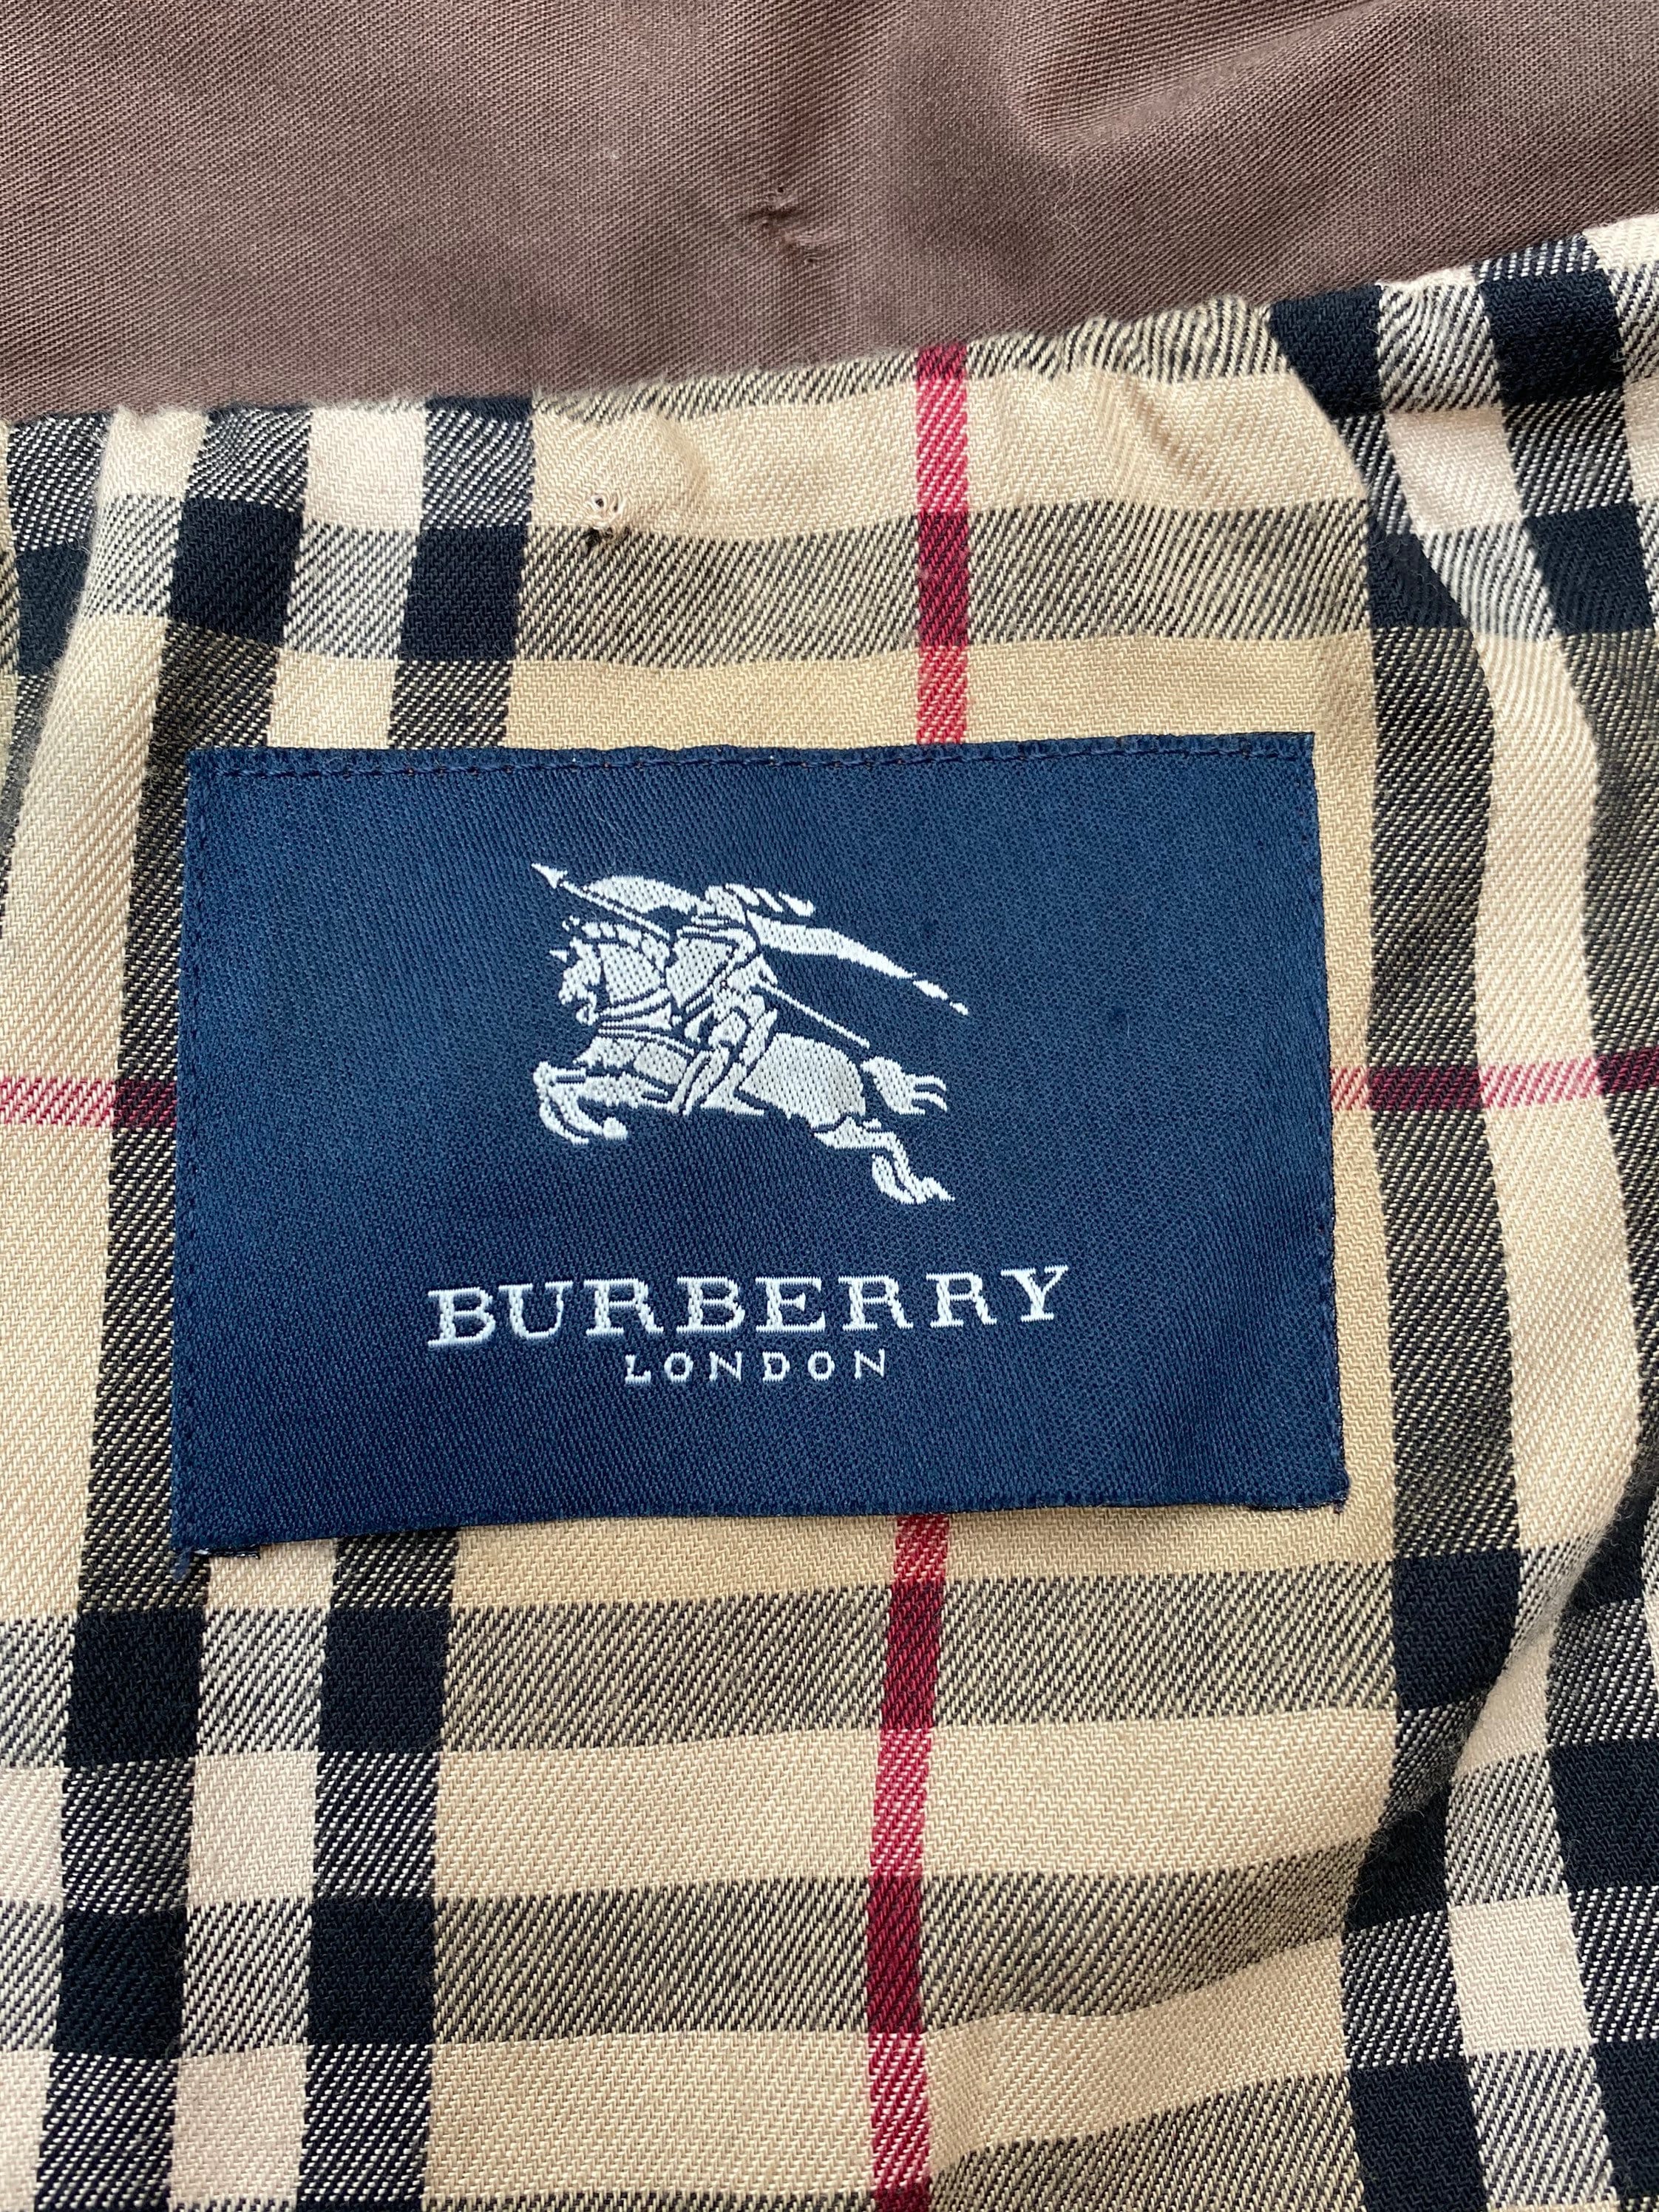 Burberry Jacket/bordeaux Jacket Burberry/burberry Jeans Jacket - Etsy